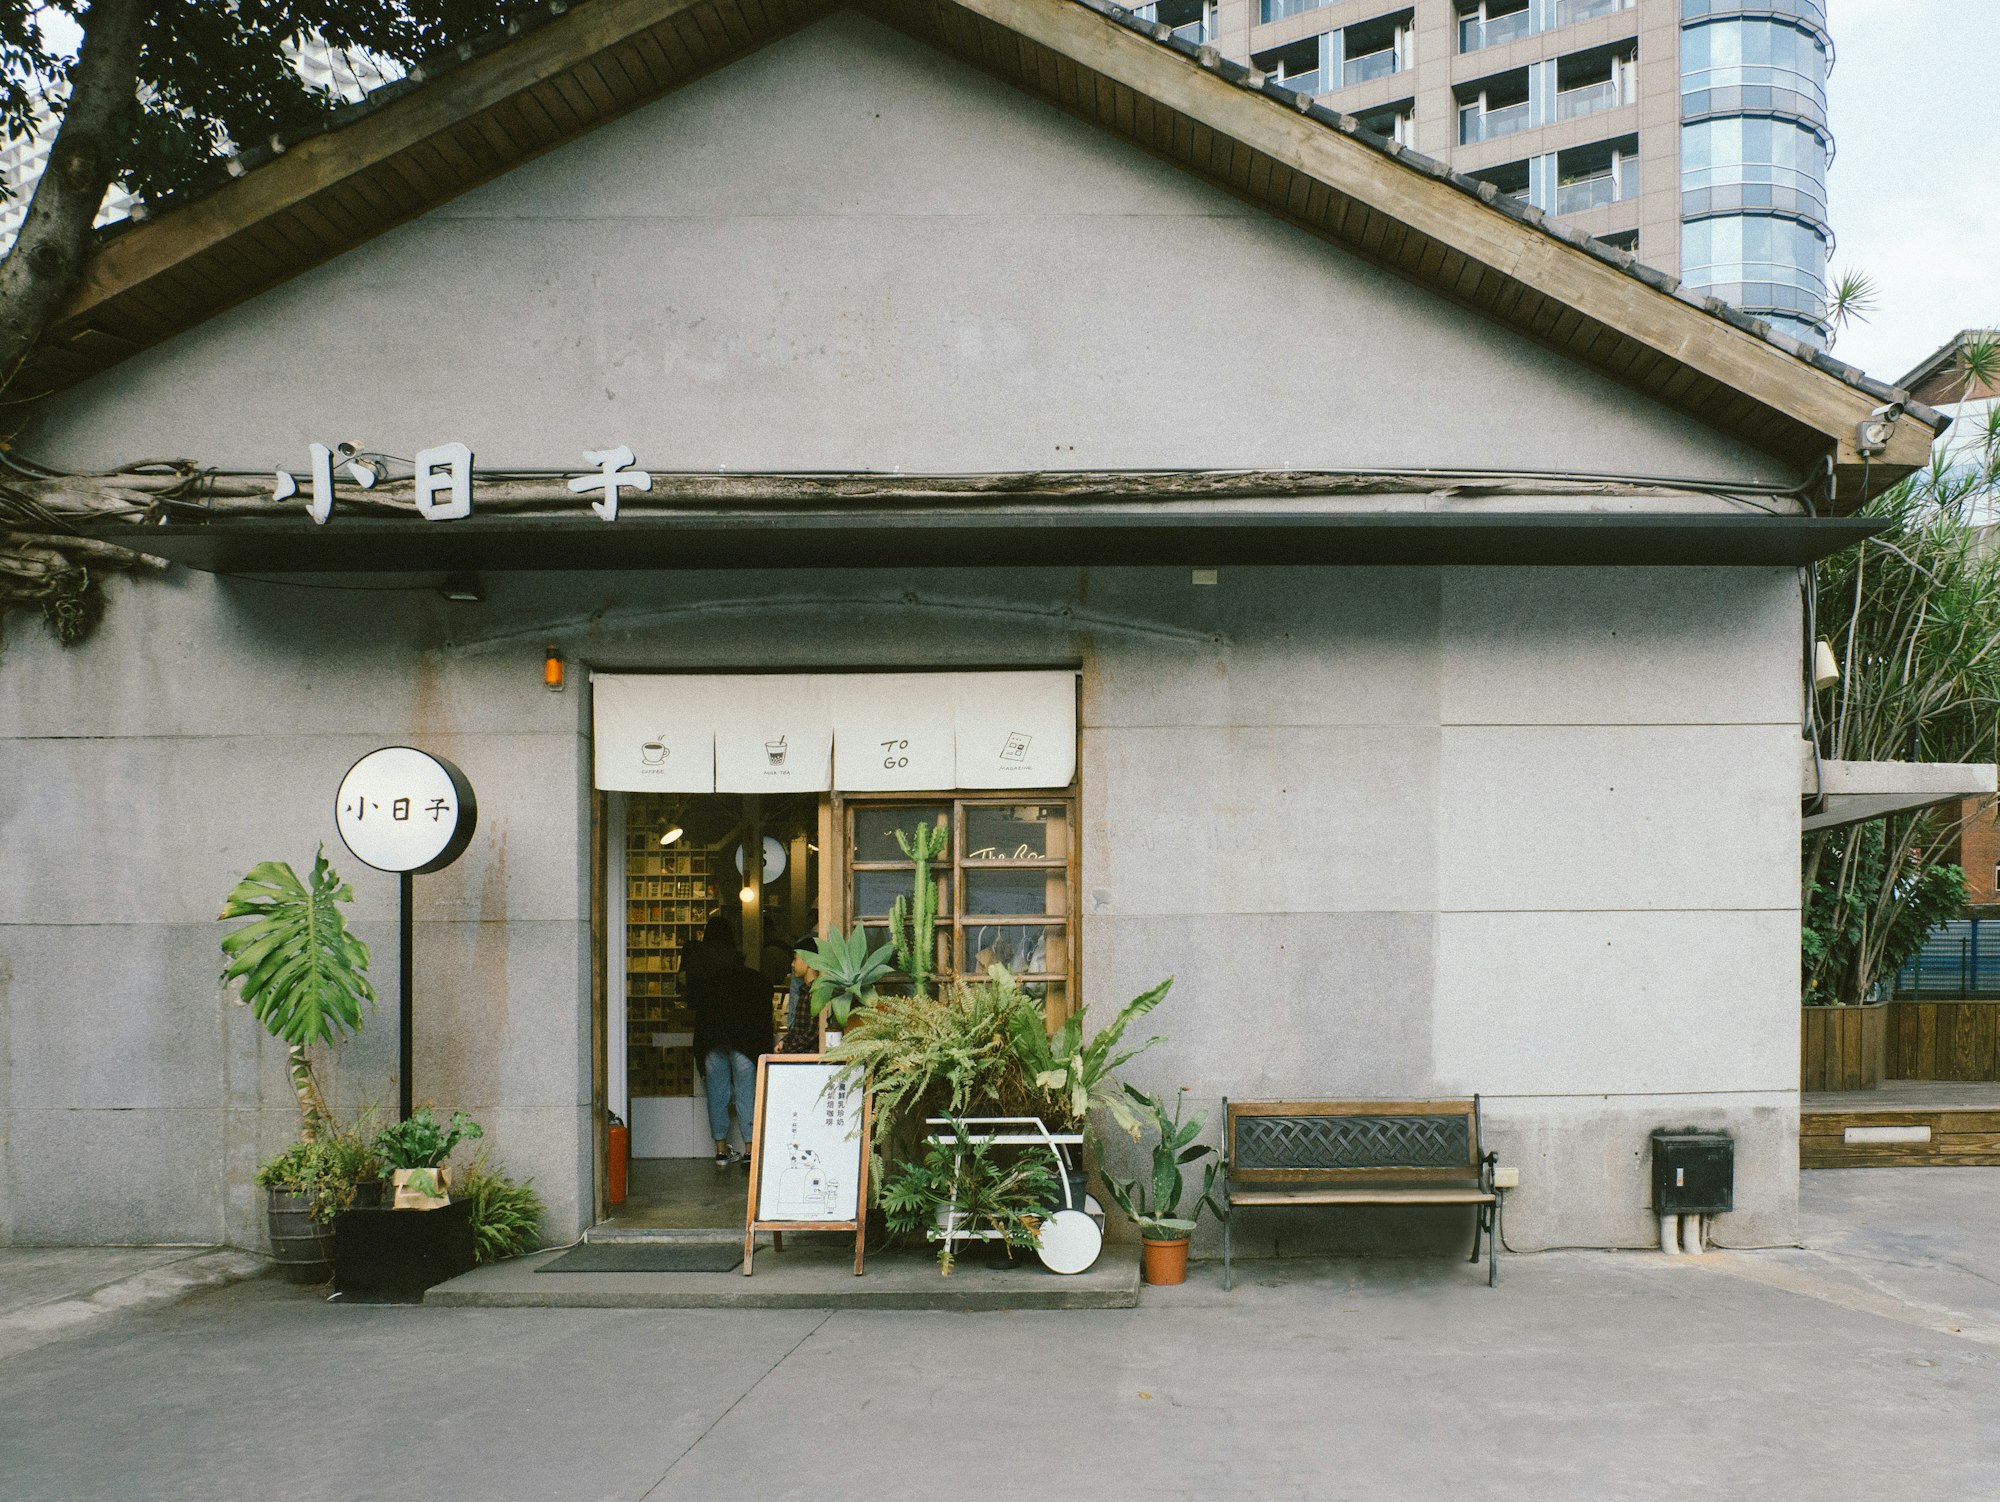 Cafe in Taiwan